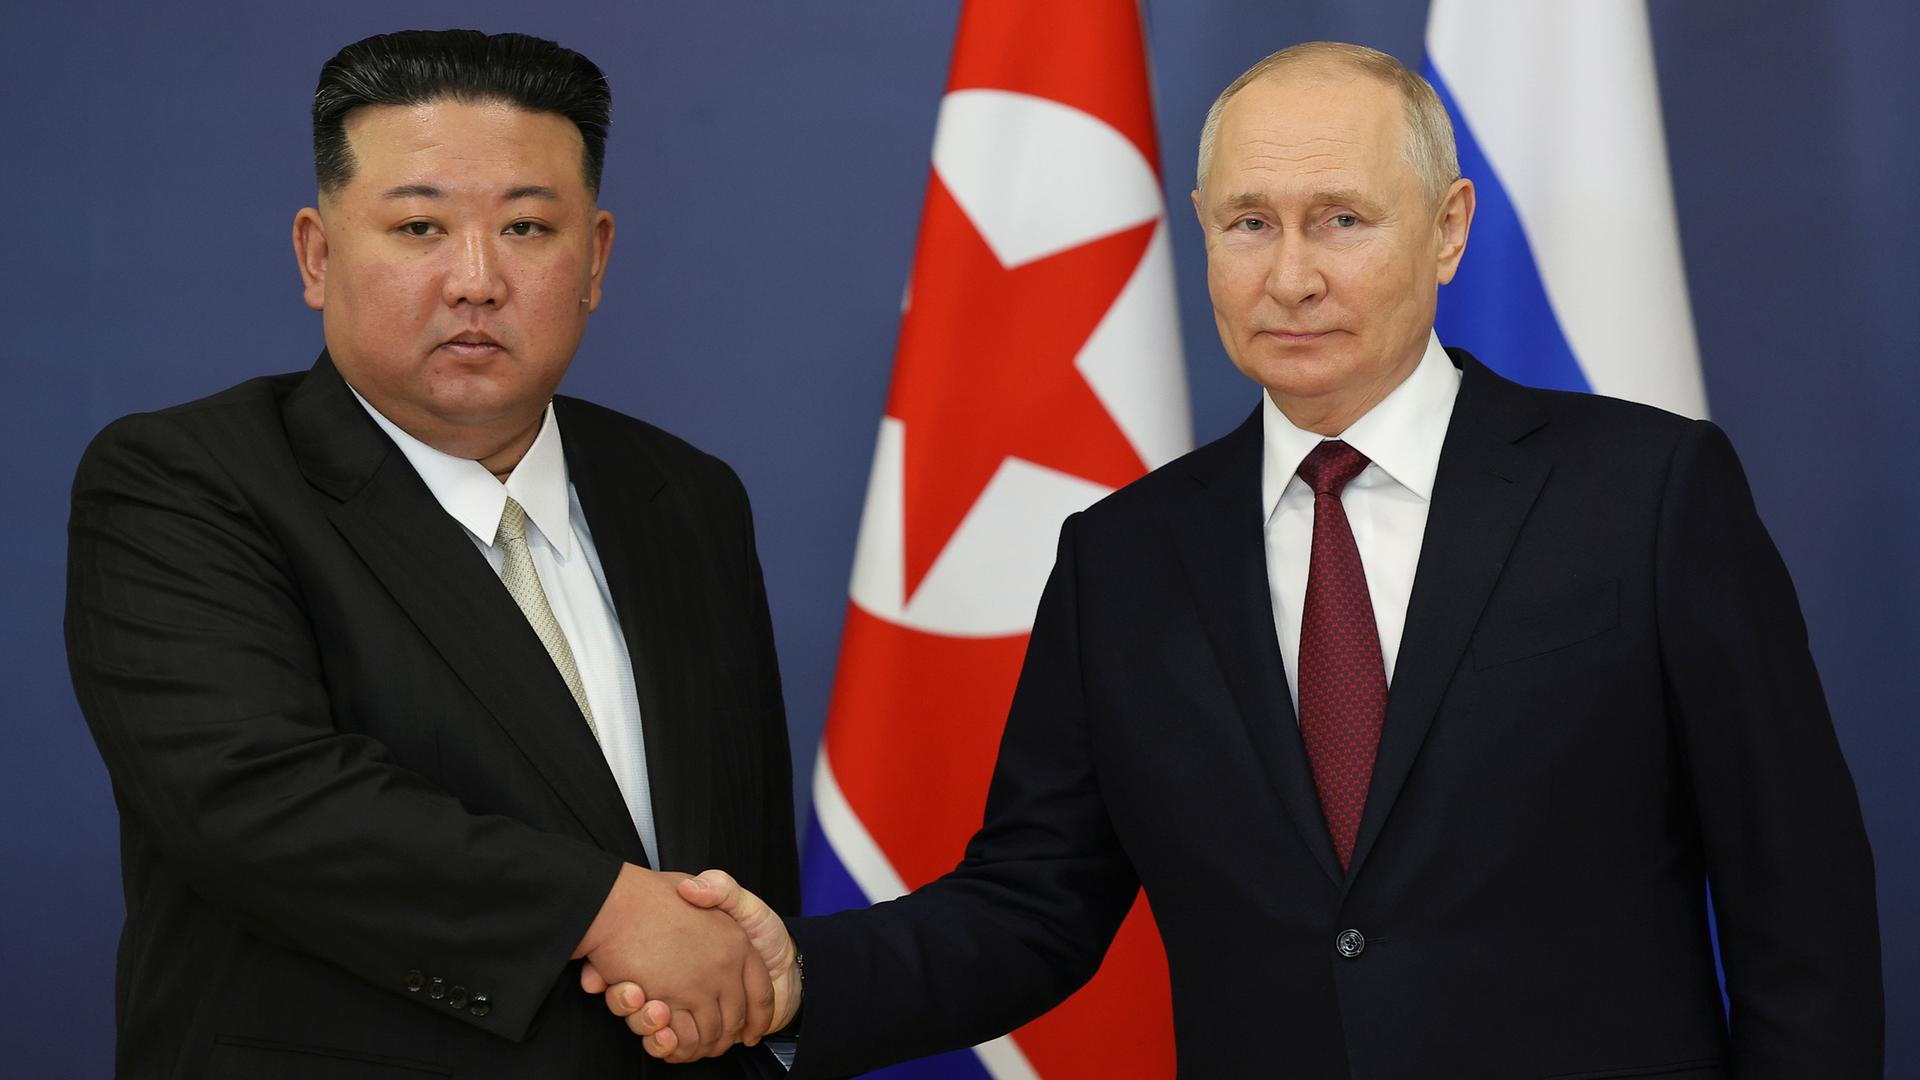 Links steht der Diktator von Nord-Korea, Kim Jong Un. Rechts steht der russische Präsident Wladimir Putin. Die beiden Männer geben sich die Hände.